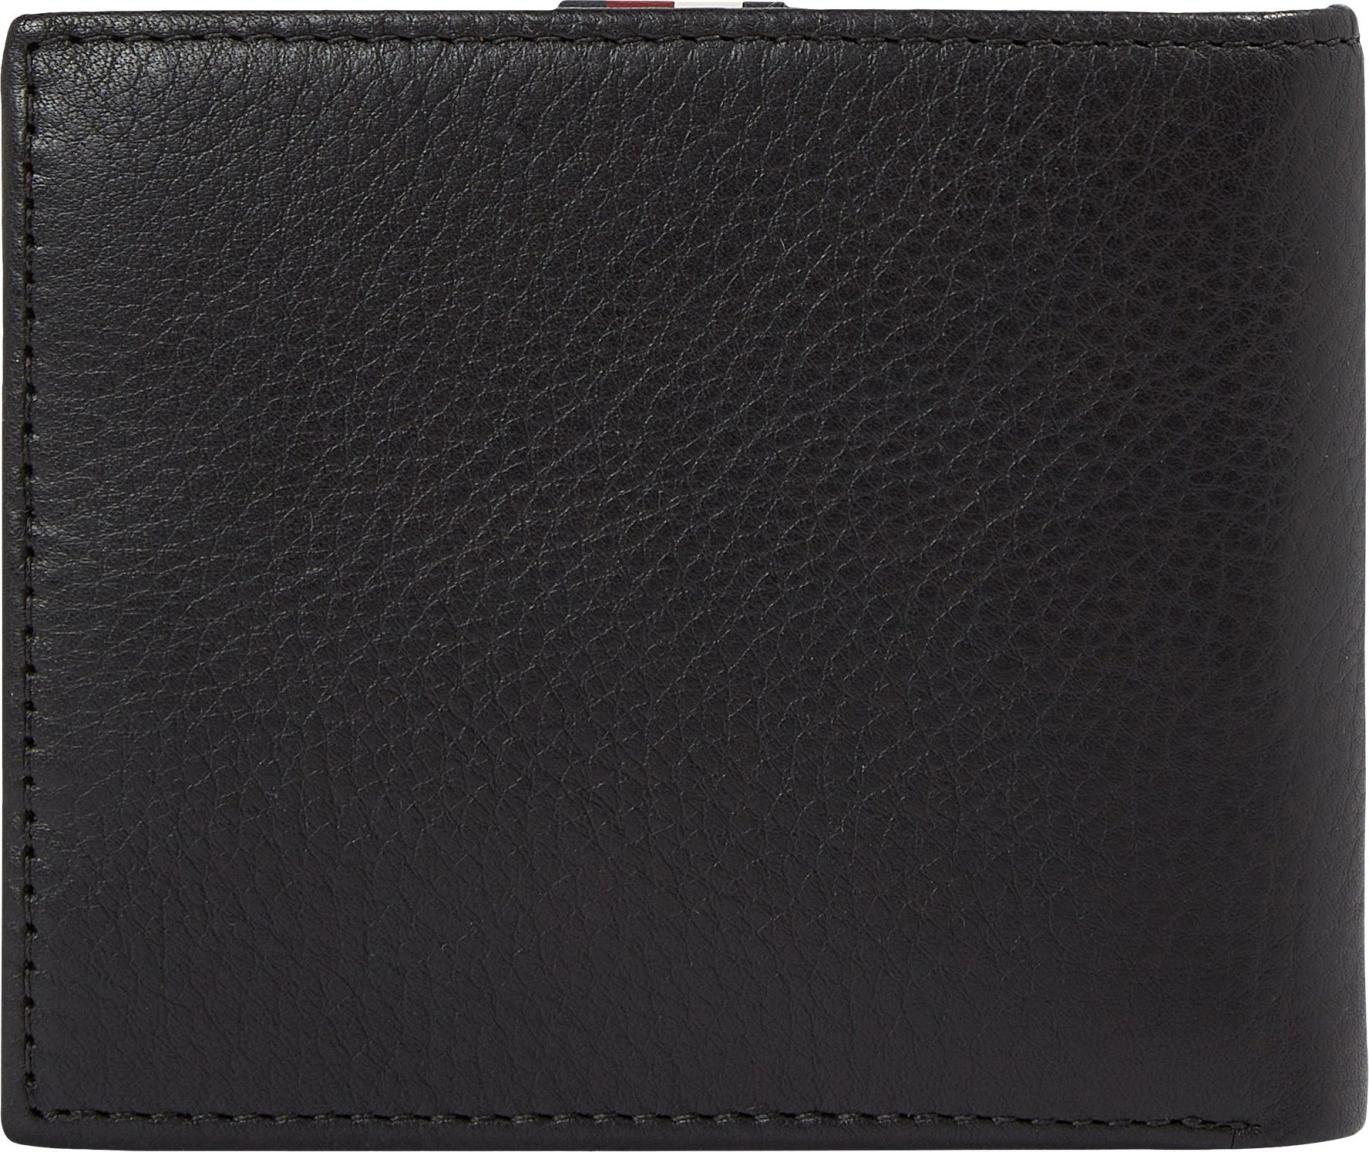 Lederbörse Tommy Hilfiger Premium Leather Black CC Flap and Coin 